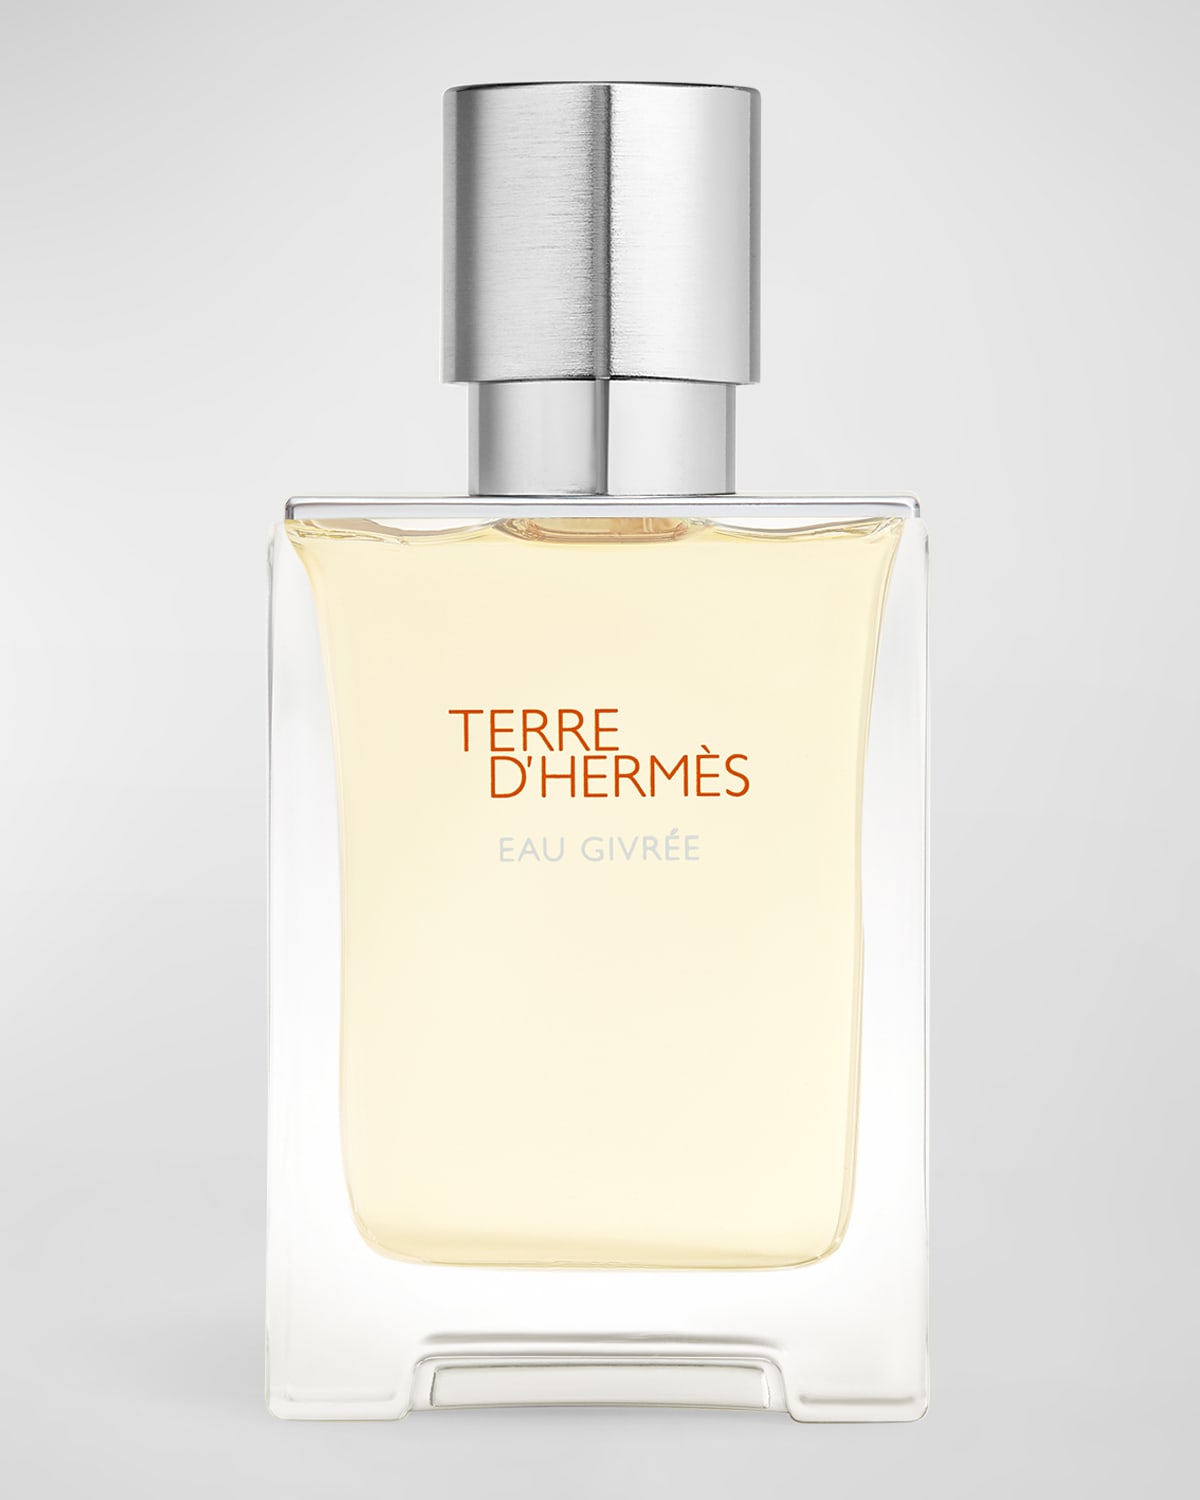 Terre d'Hermes Eau Givree Eau de Parfum, 1.7 oz.